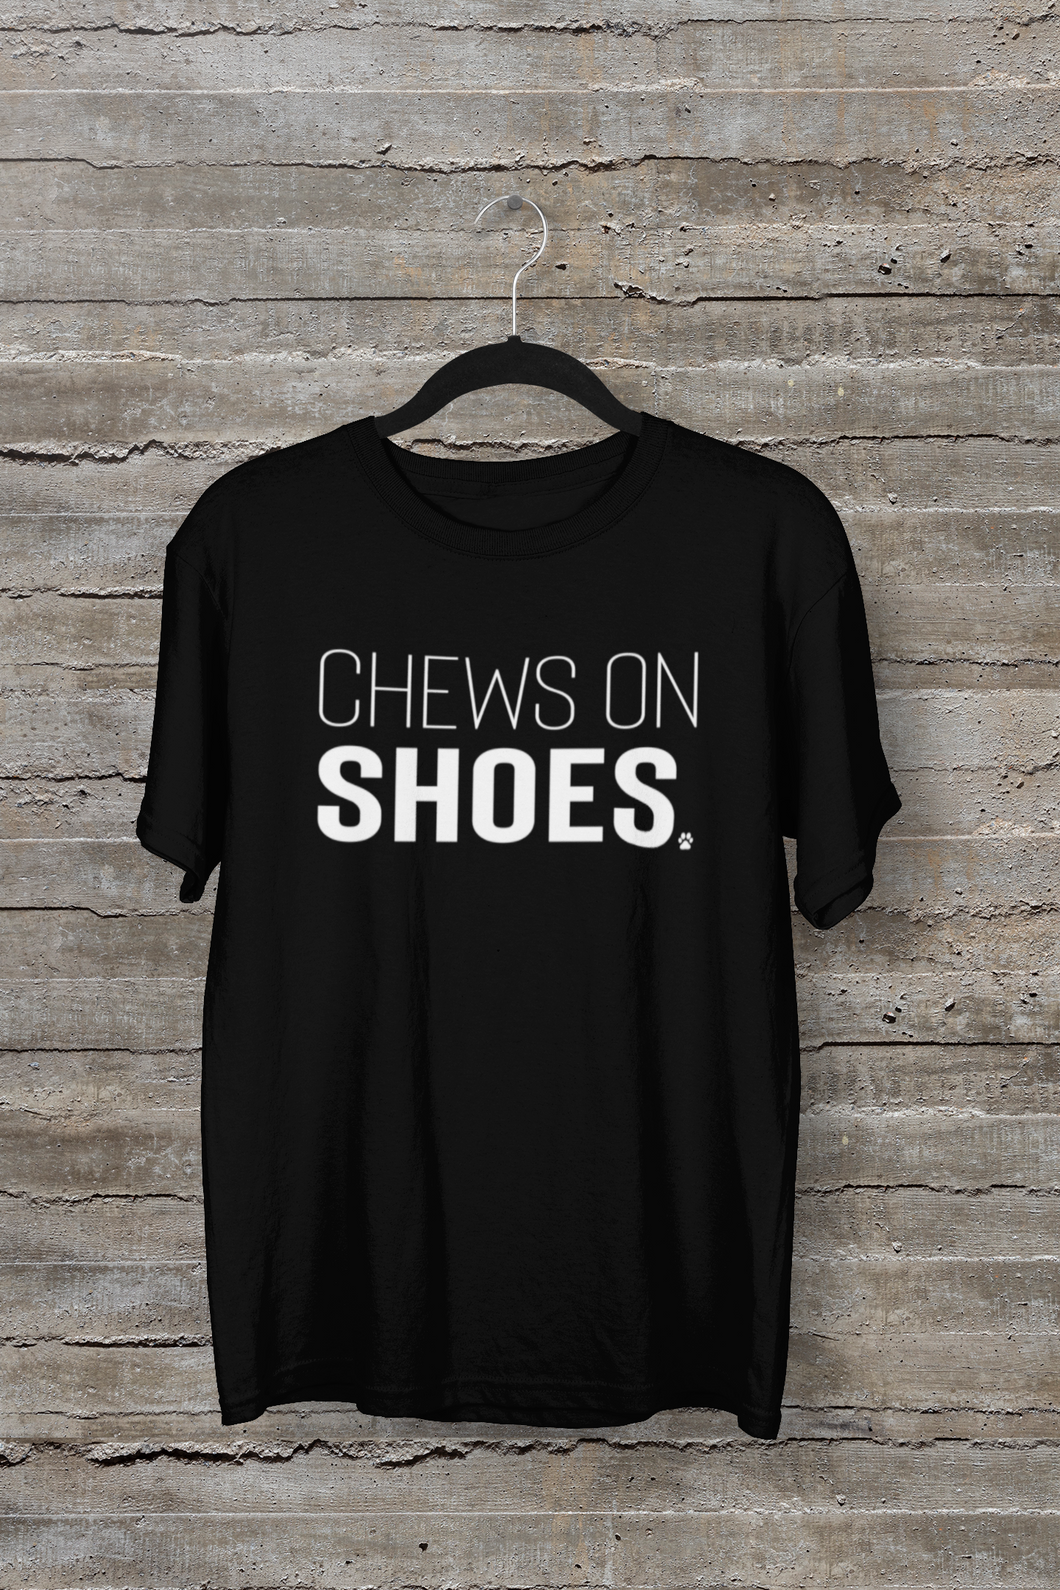 Chews on Shoes Men's/Unisex or Women's T-shirt